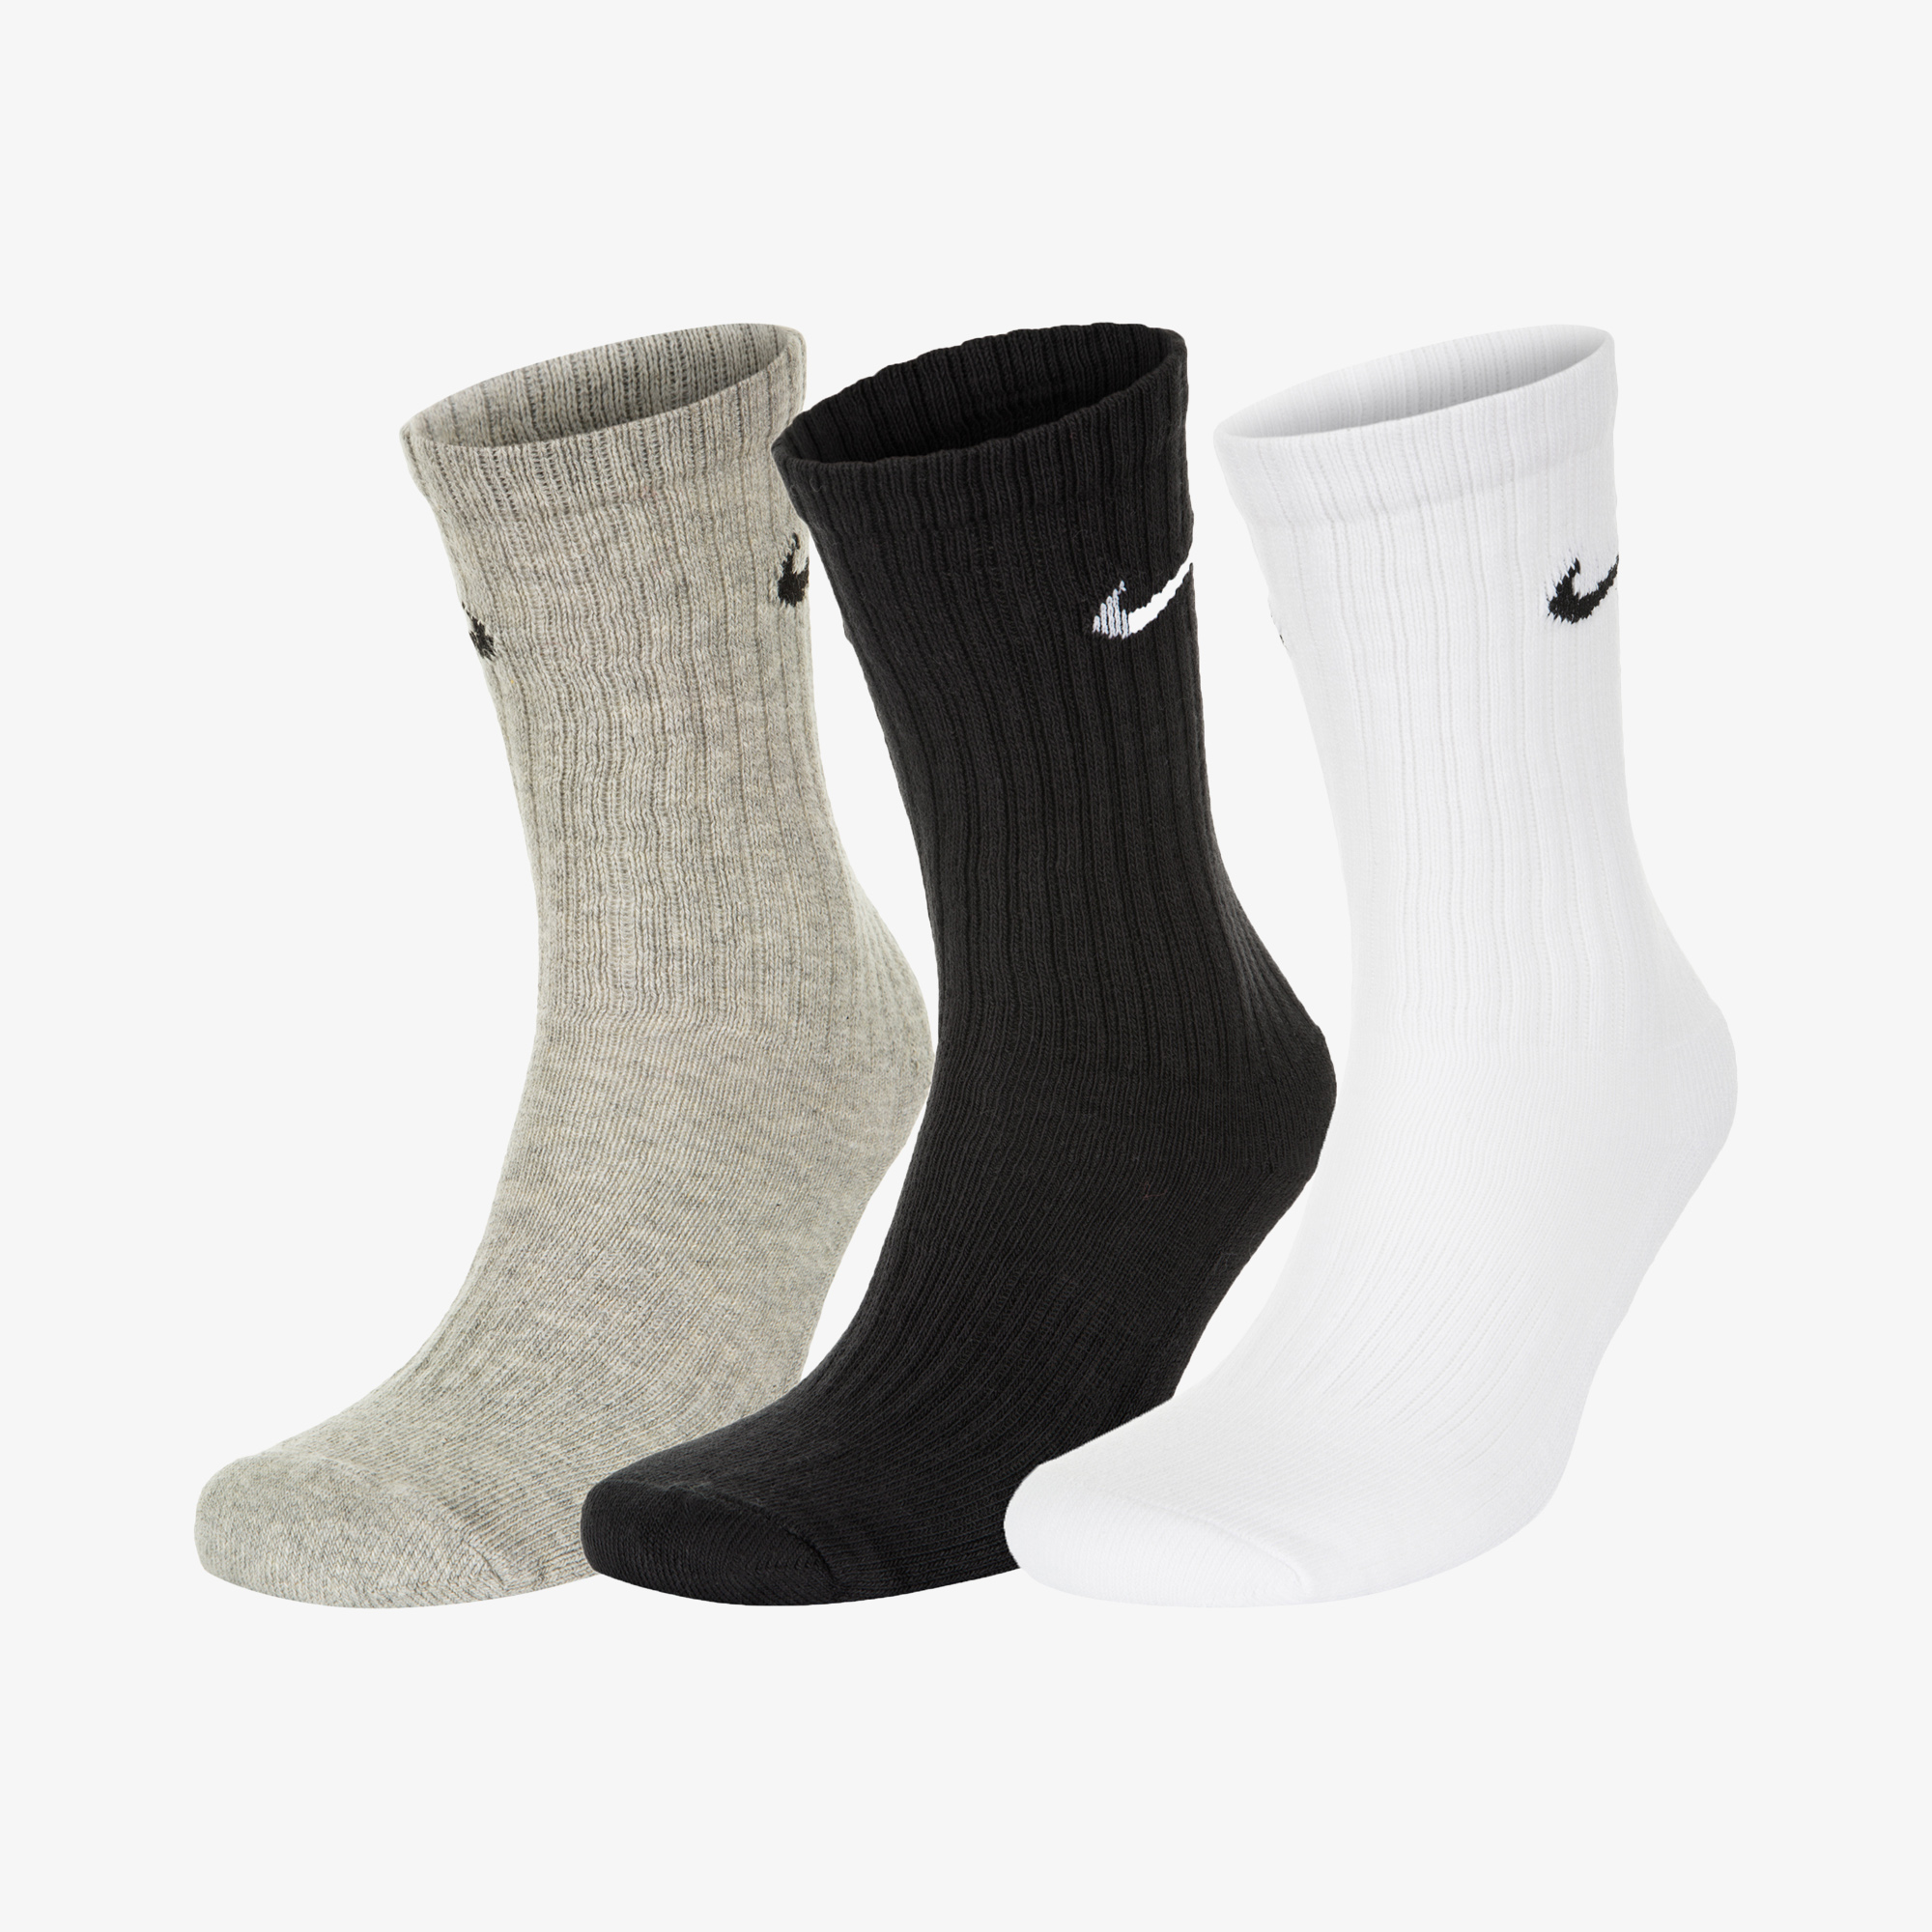 Носки Nike Nike Cush Crew, 3 пары SX4508-N06-965, цвет серый, размер 41-45 SX4508-965 - фото 1